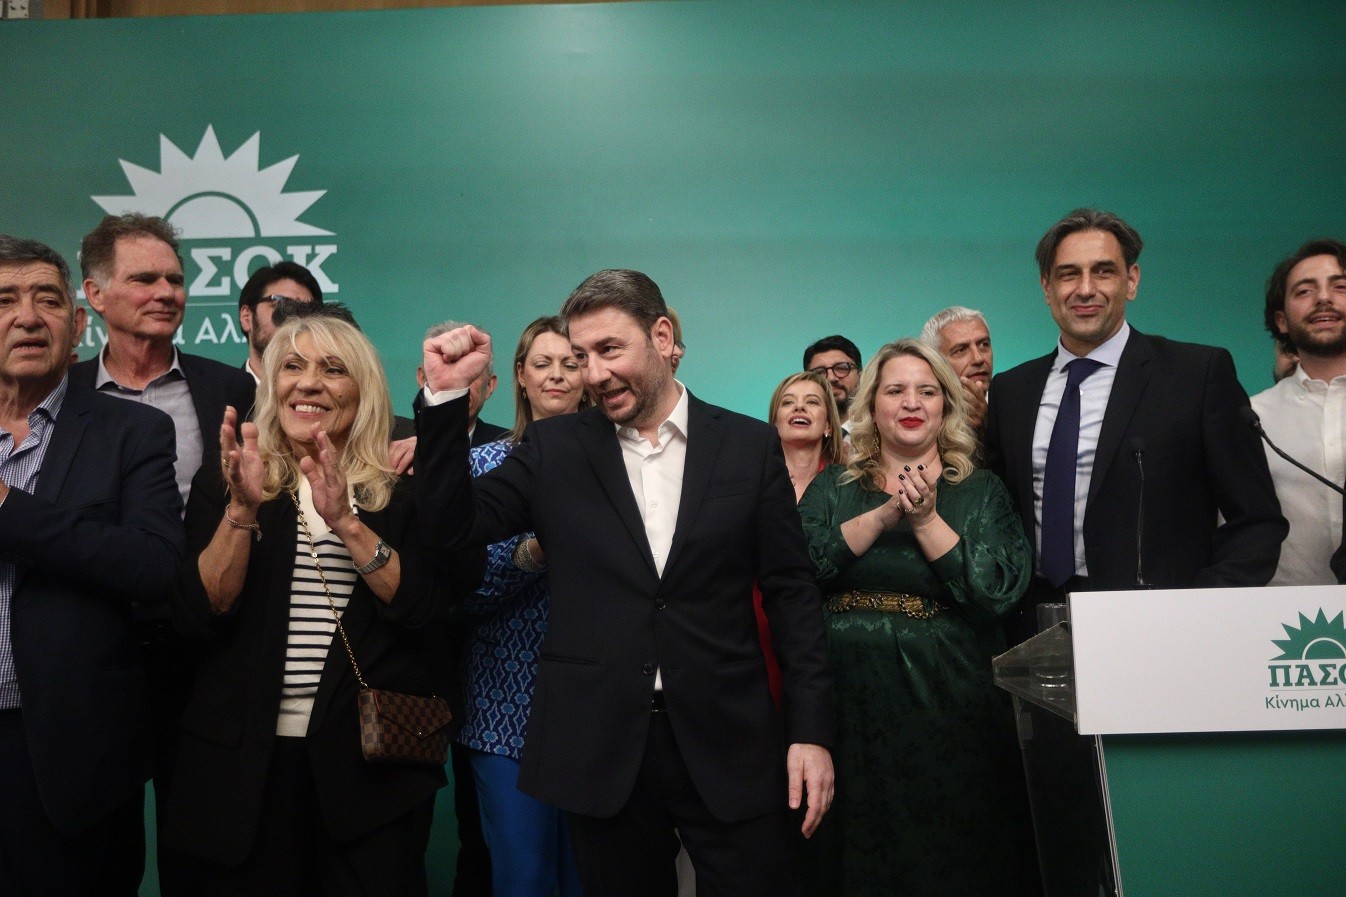 ΠΑΣΟΚ: Ανακοίνωσε τους υποψηφίους ευρωβουλευτές – Ζαγοράκης, Αρναούτογλου, Καλλιακμάνης στη λίστα (vid)